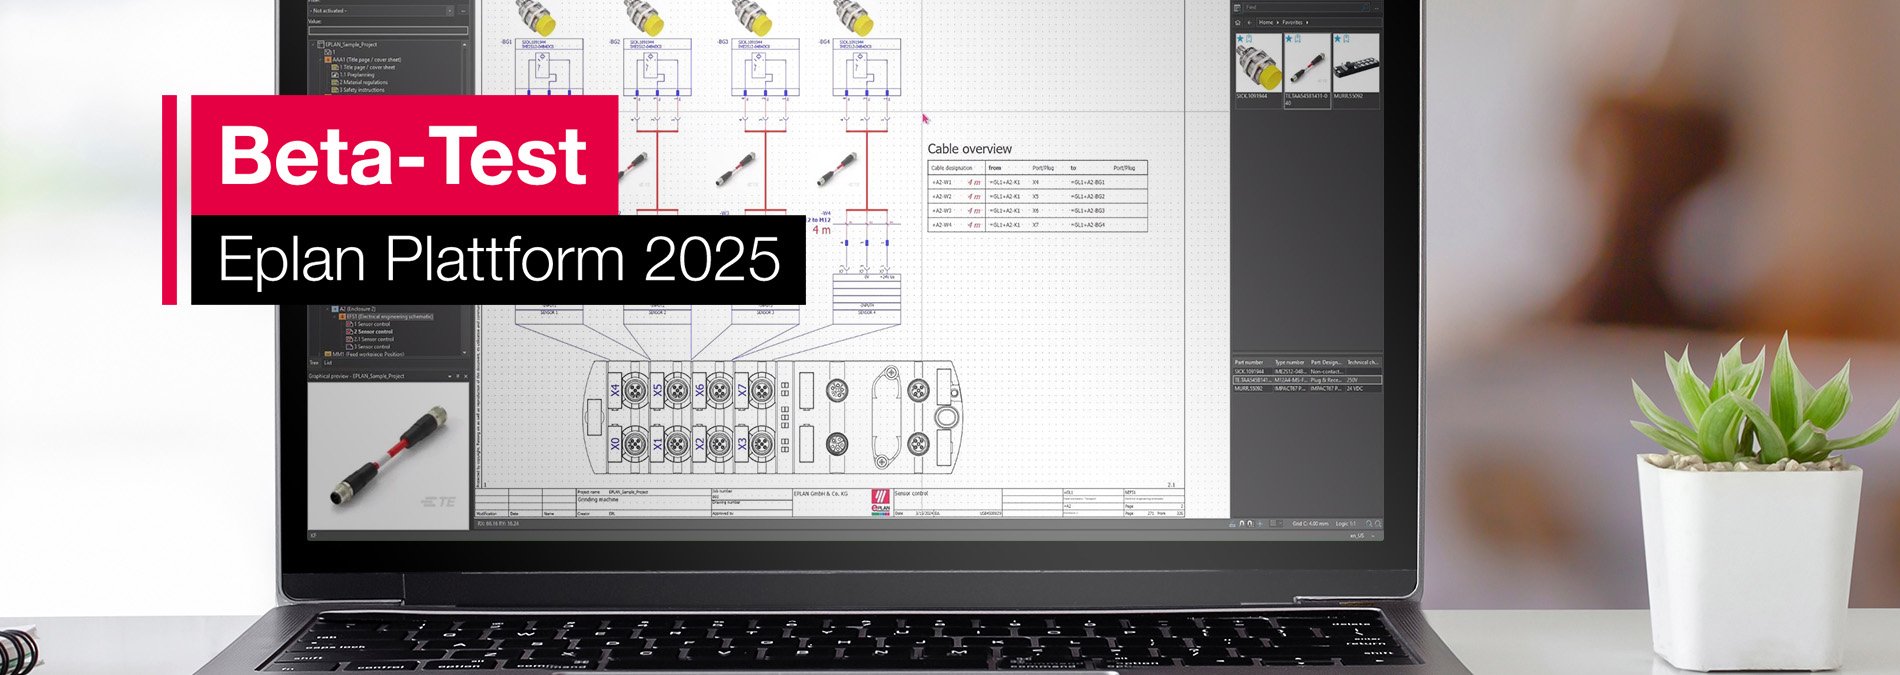 Laptop mit Screenshot Eplan Plattform 2025